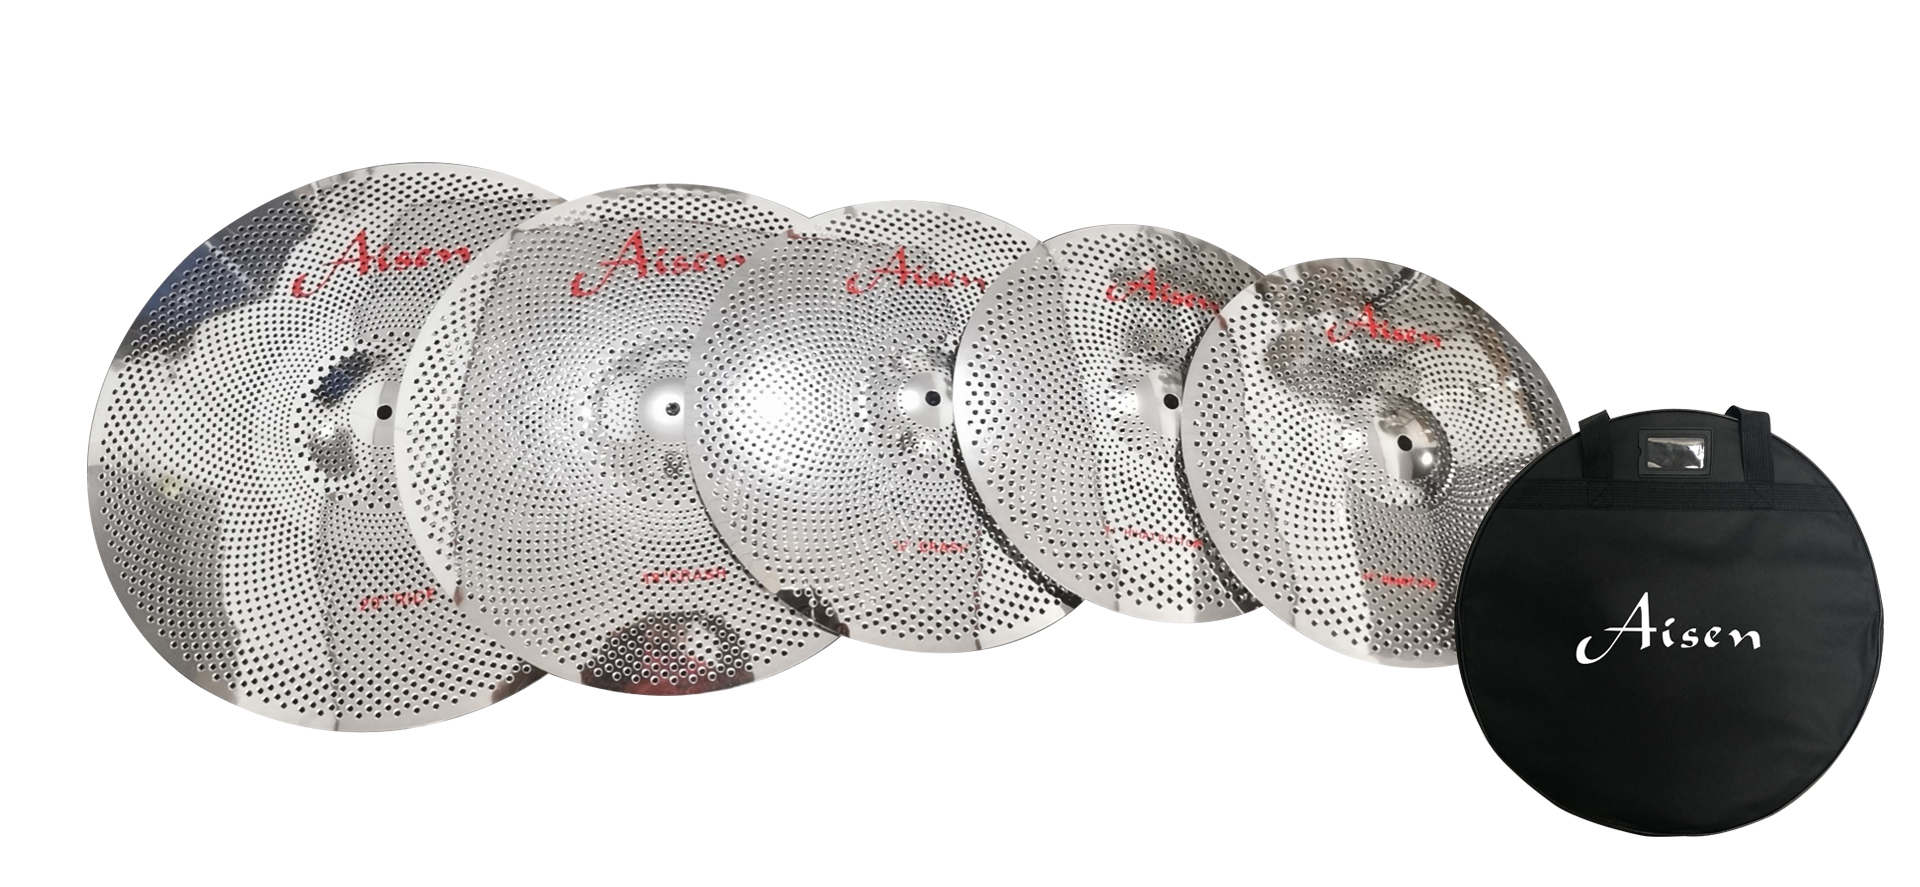 Тарелки, барабаны для ударных установок AISEN LOW VOLUME SILVER CYMBAL PACK тарелки барабаны для ударных установок aisen b20 rock cymbal pack 4 шт